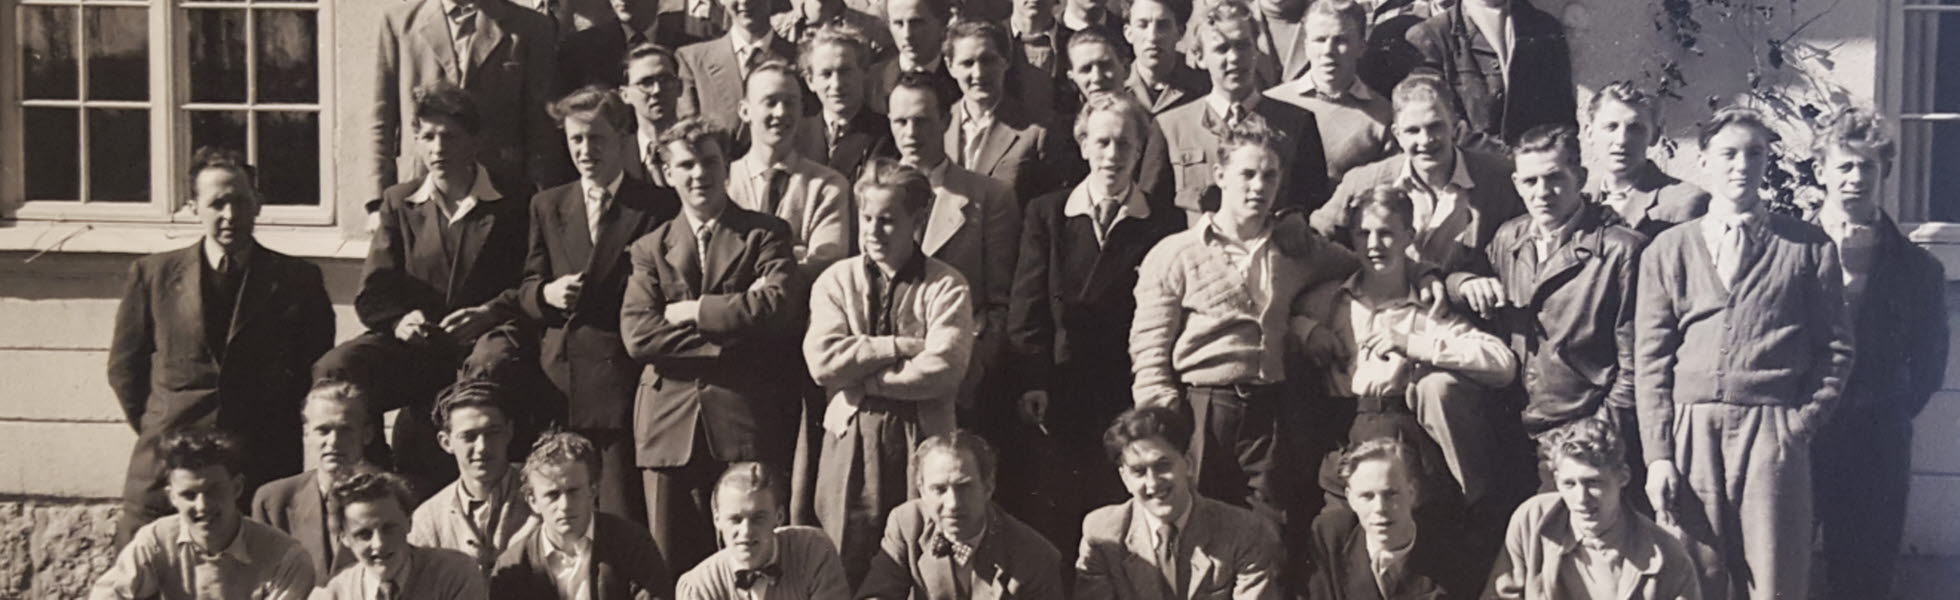 Målareförbundets första ungdomskurs 2-8 april 1950 på Bommersvik